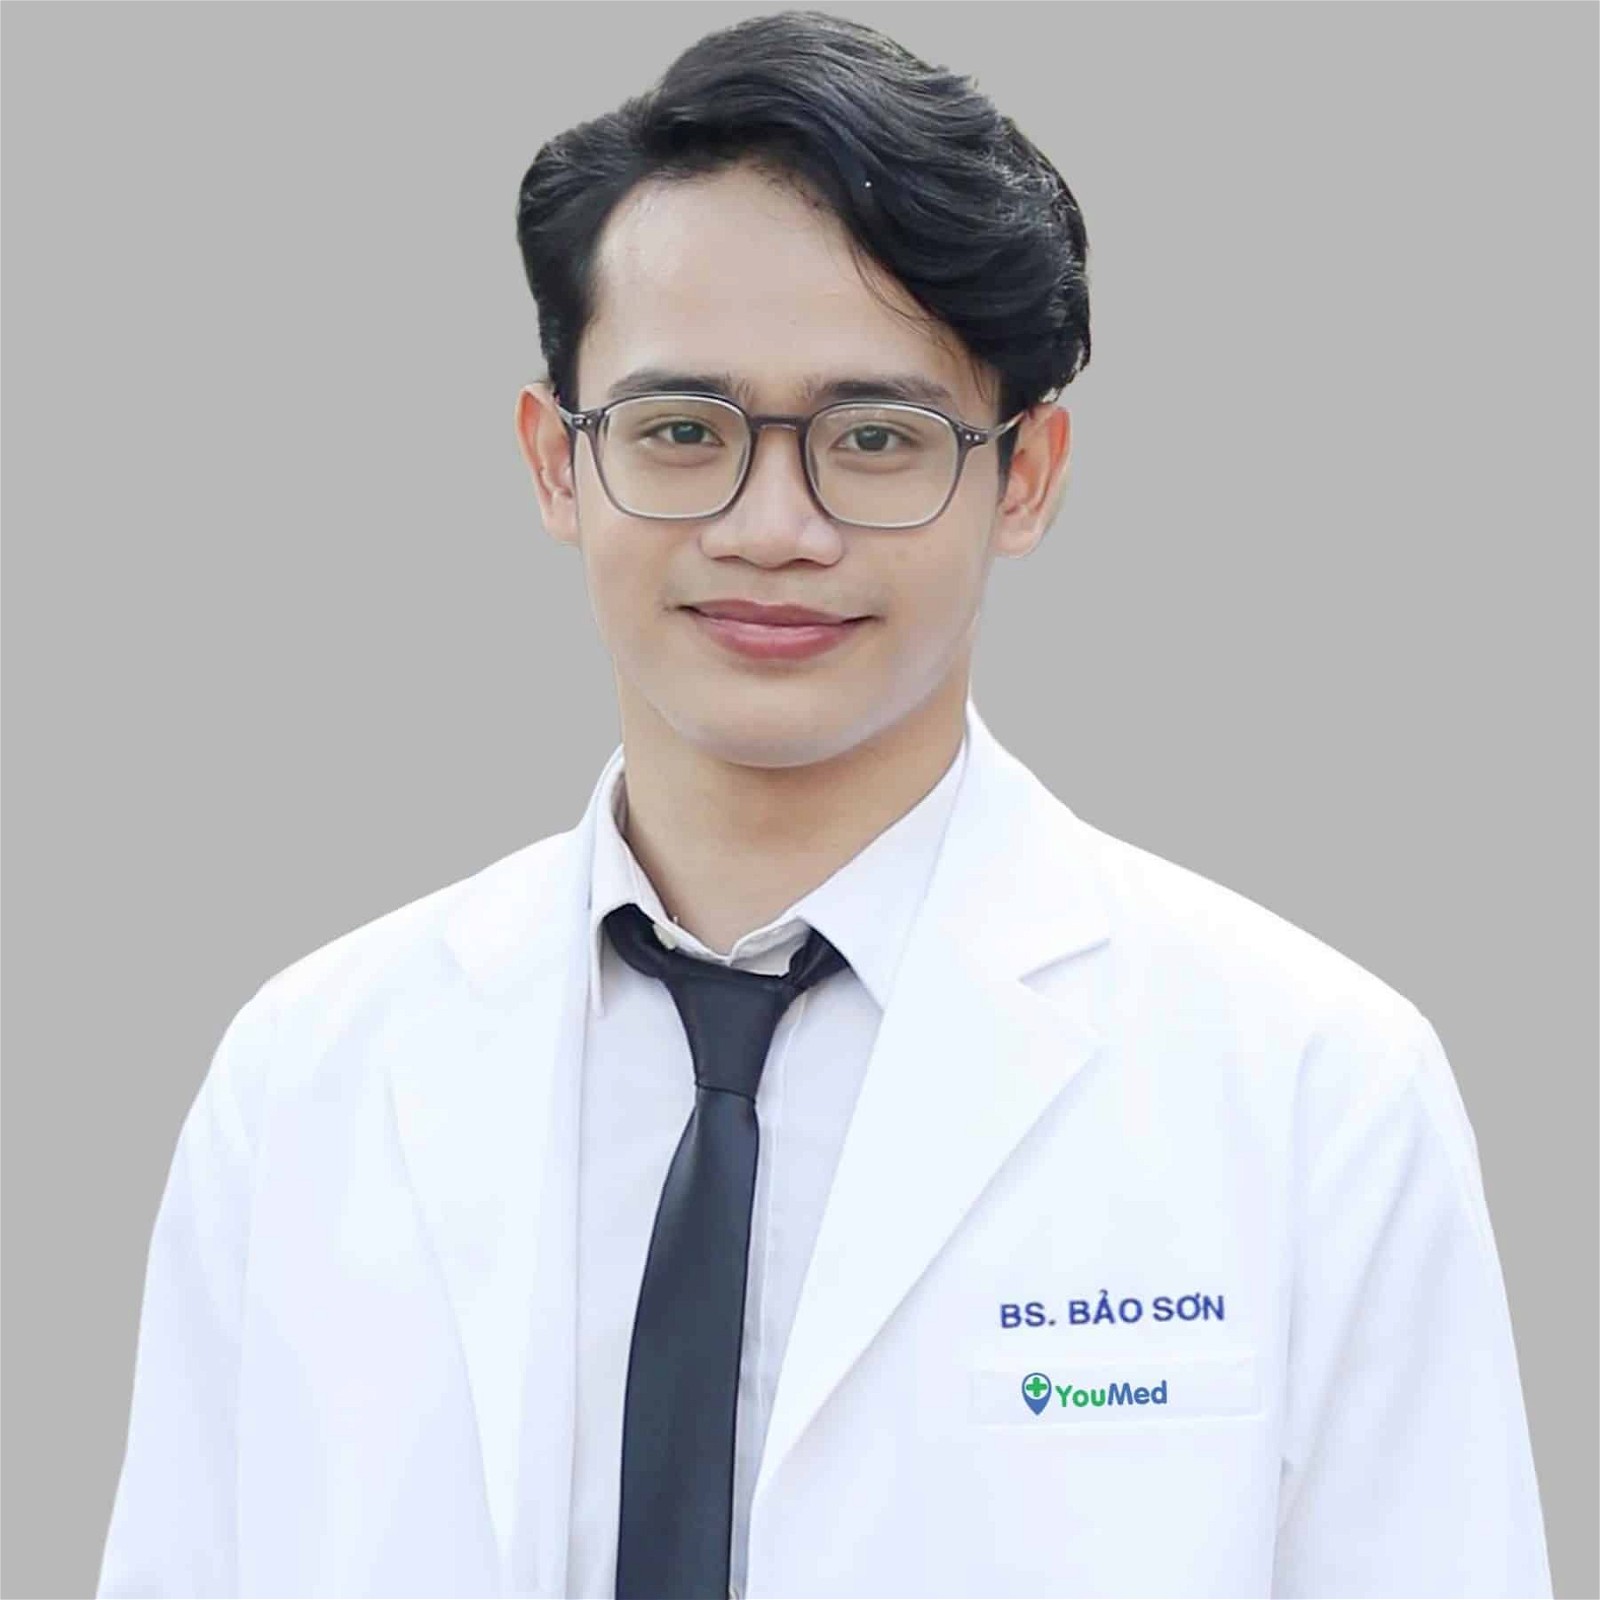 Bác sĩ Nguyễn Bảo Sơn